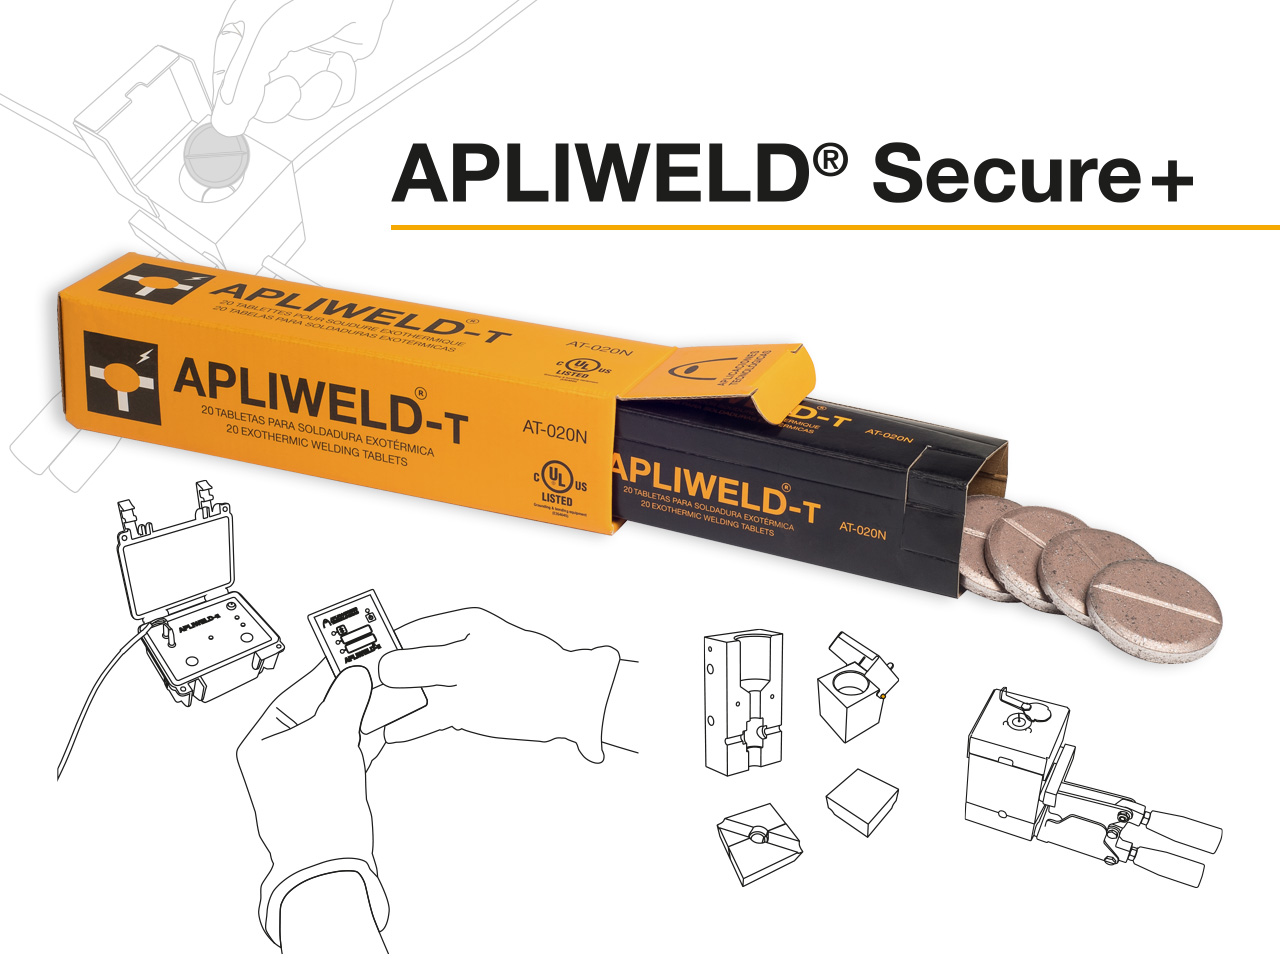 Apliweld Secure+: soldadura exotérmica com pastilhas e disparo remoto |Novos vídeos utilização com molde específico e molde múltiplo